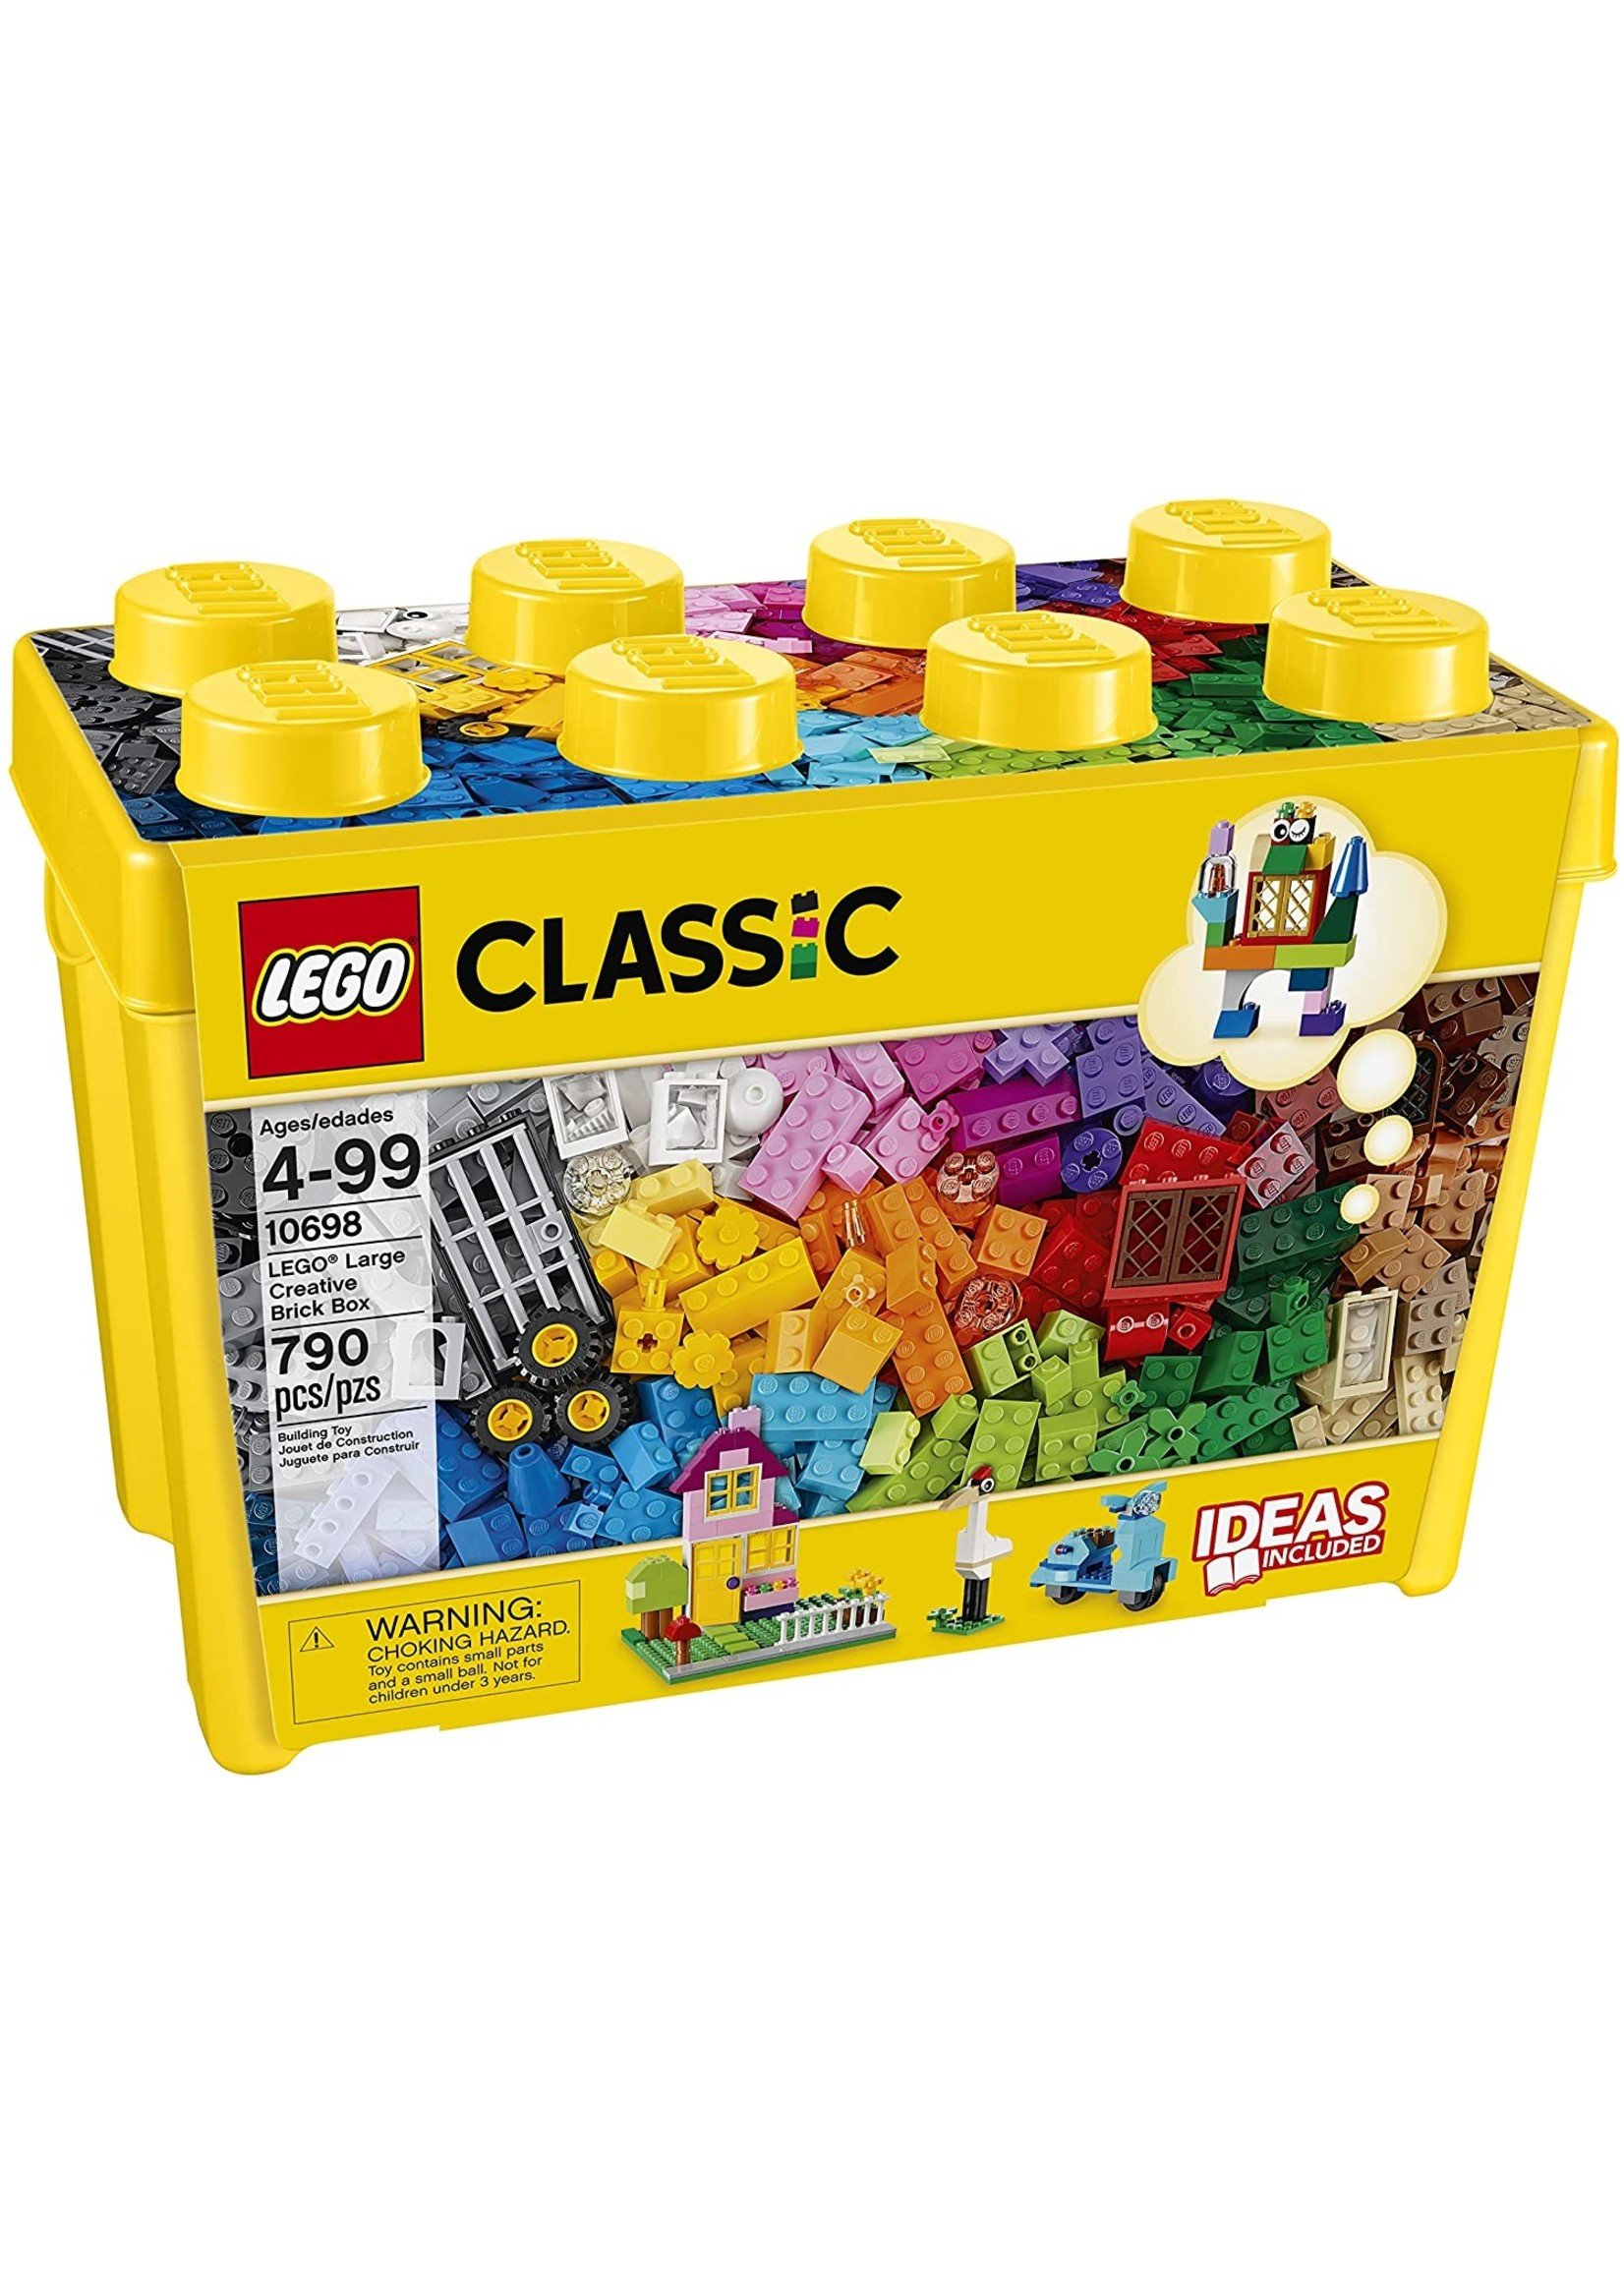 LEGO 10698 - Creative Brick Box - Large